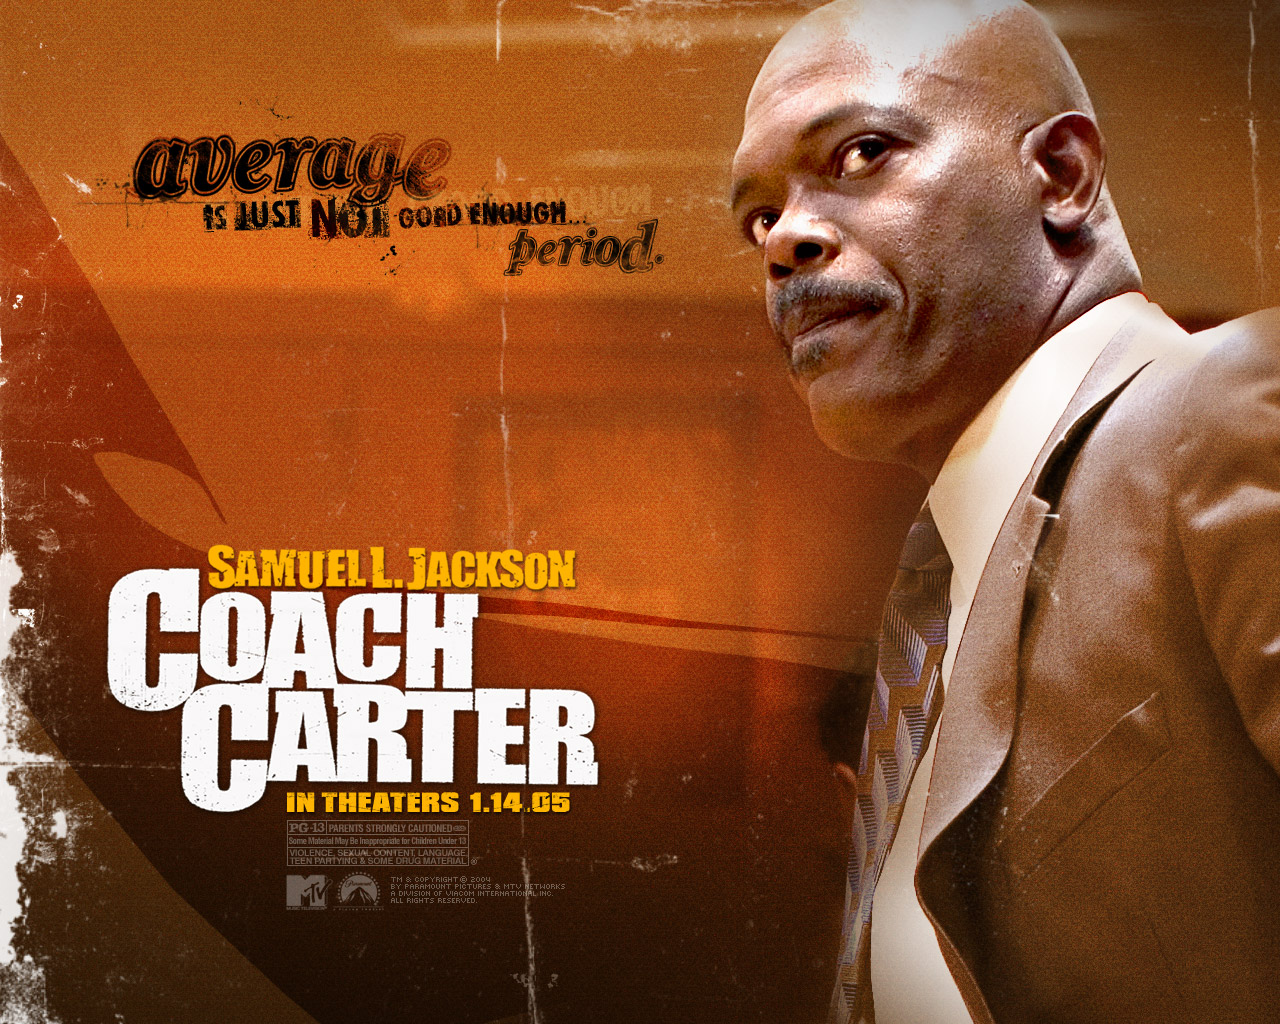 Coach Carter Movie Quotes. QuotesGram